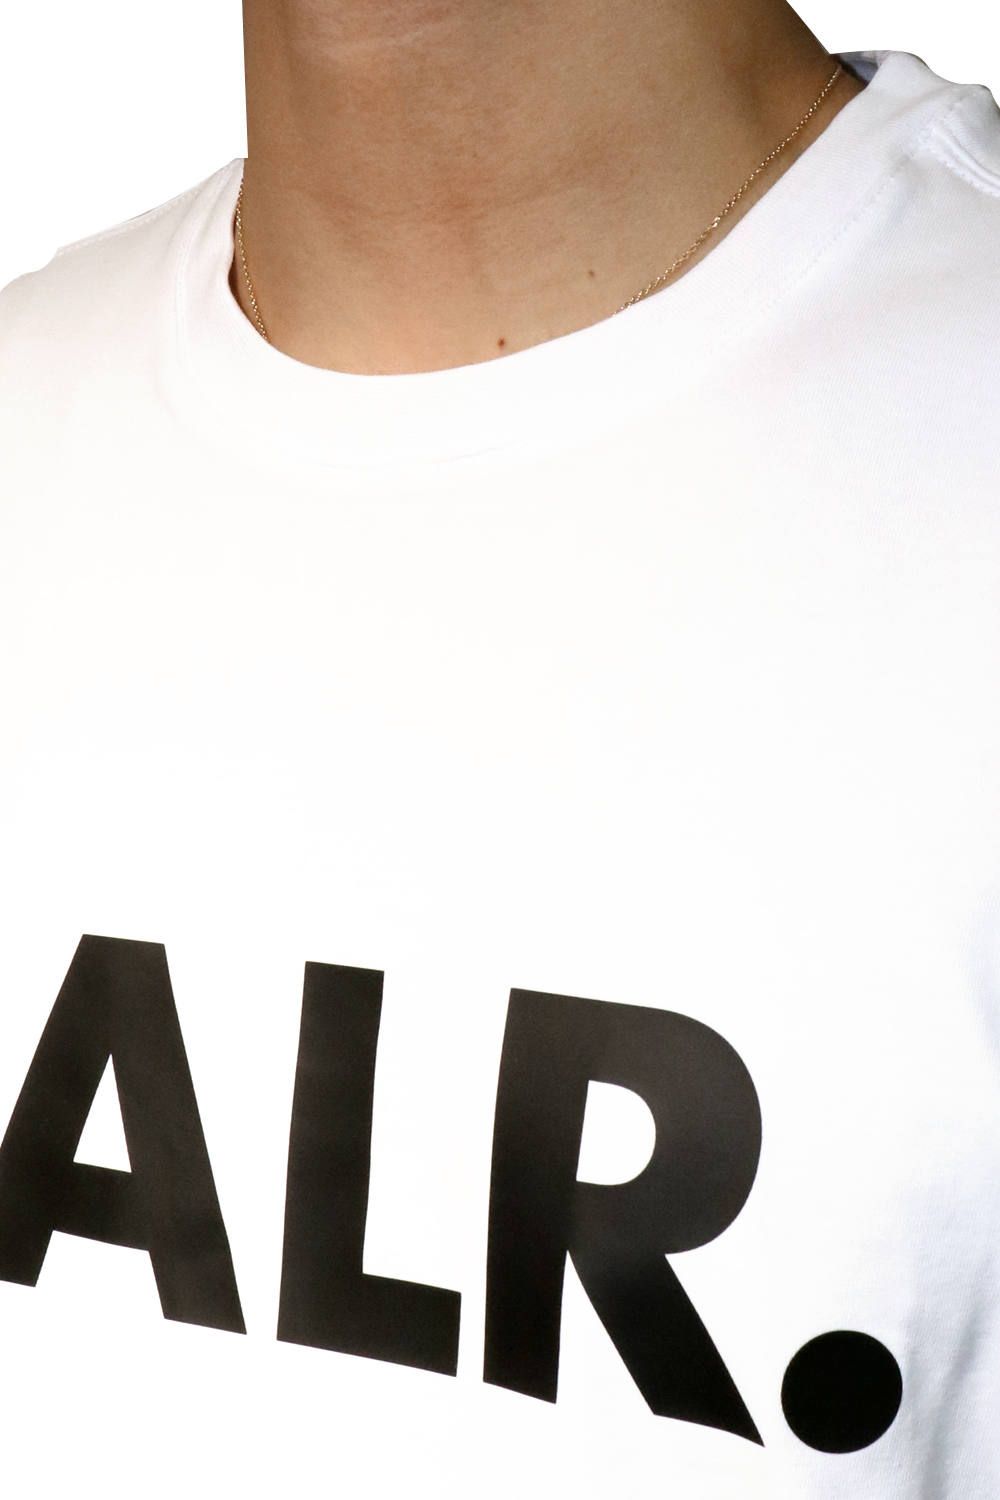 【未使用】BALR . Tシャツ Brand アスレチック T 黒 金 ロゴ S